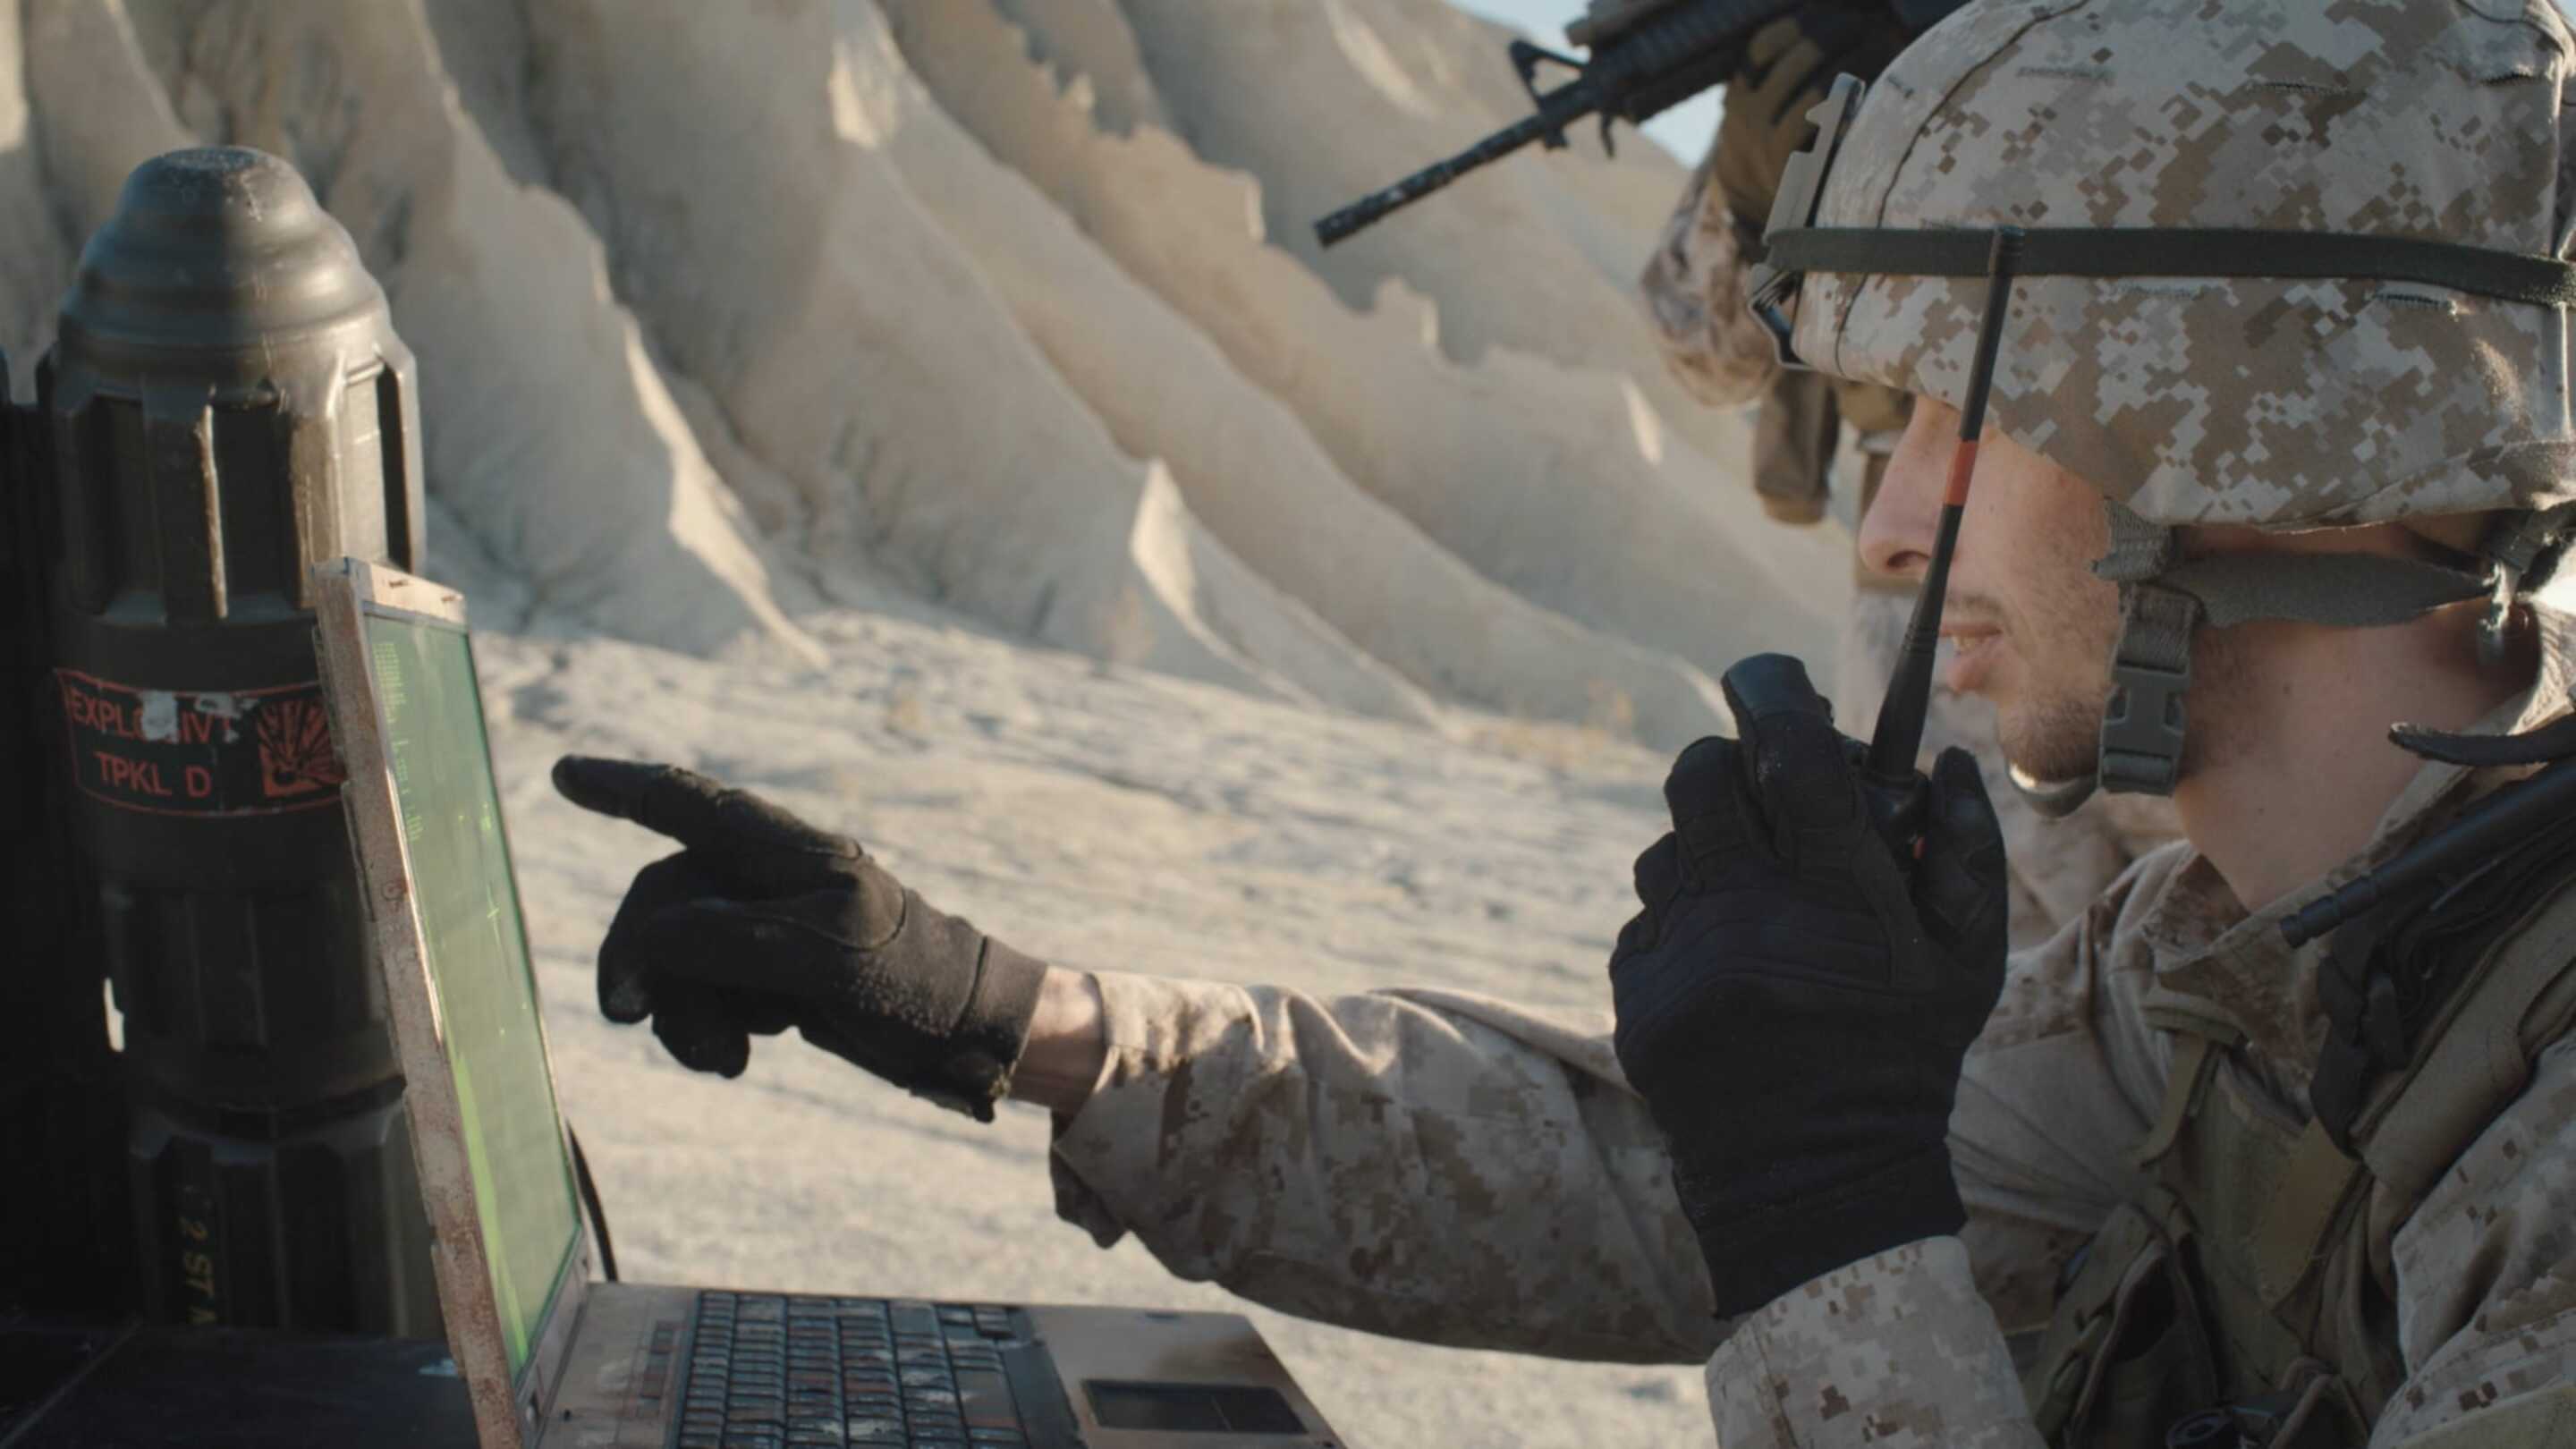 Tempest - Military Touchscreen: un uomo in uniforme militare che utilizza un computer portatile